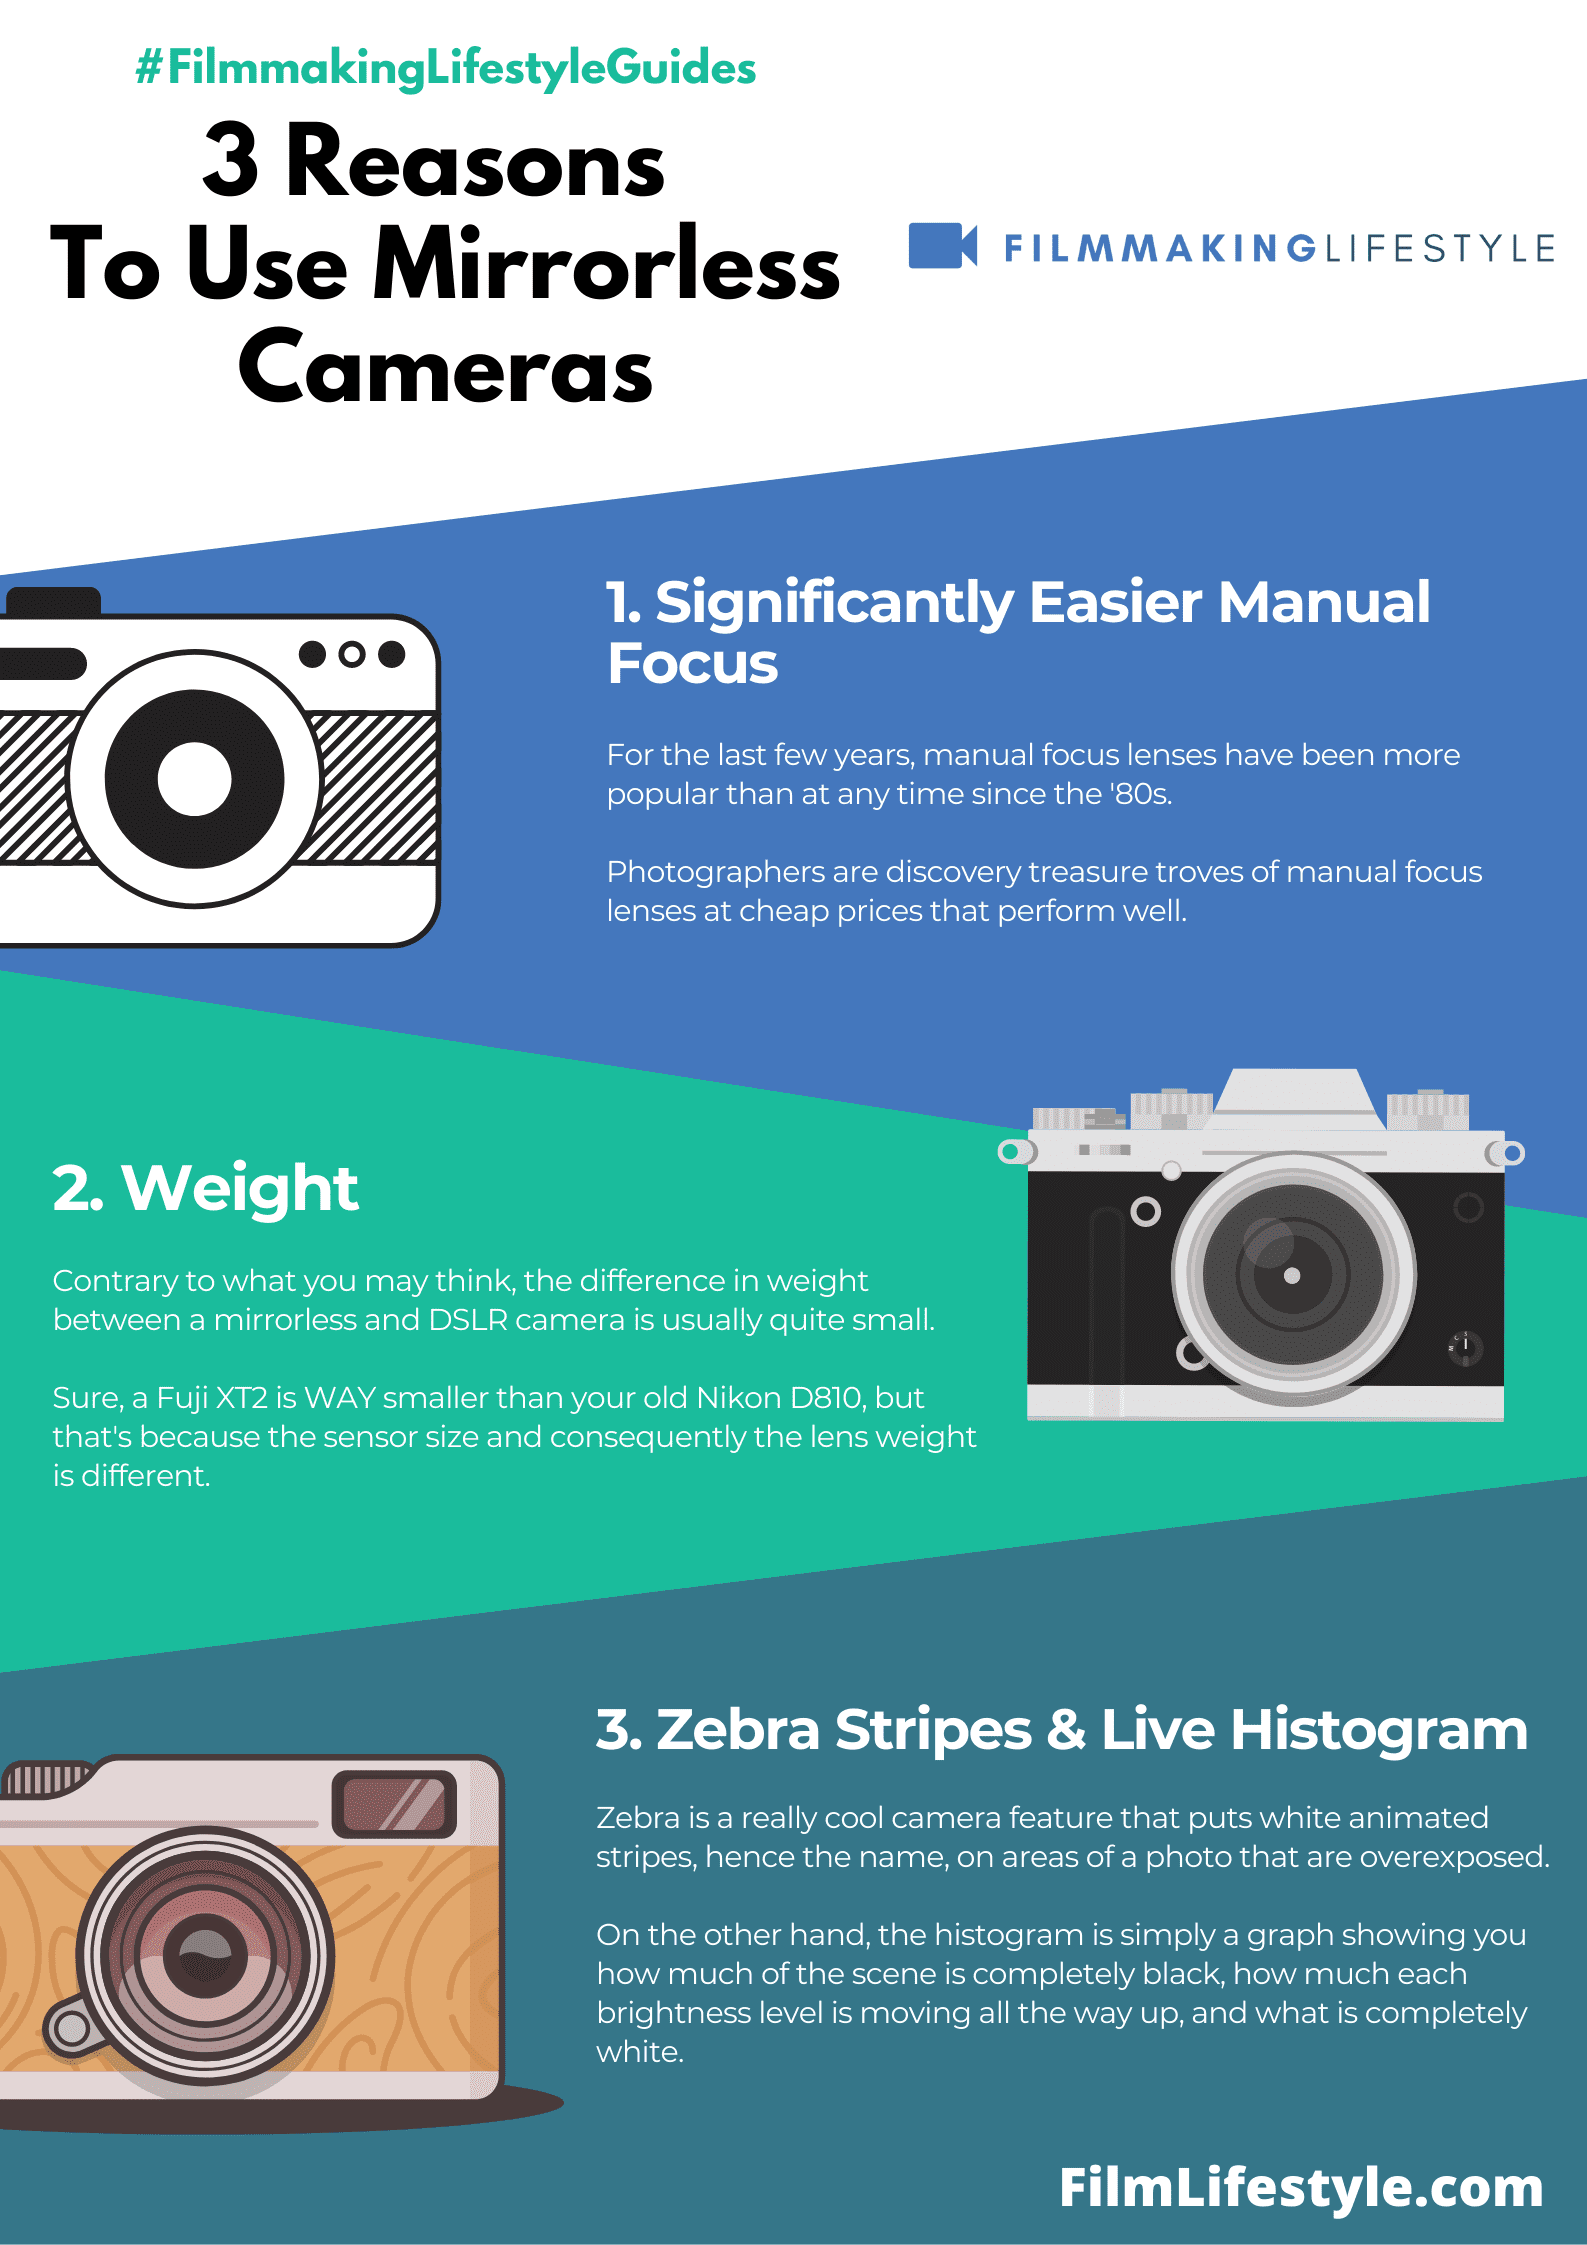 Best Mirrorless Camera Under 500 Dollars